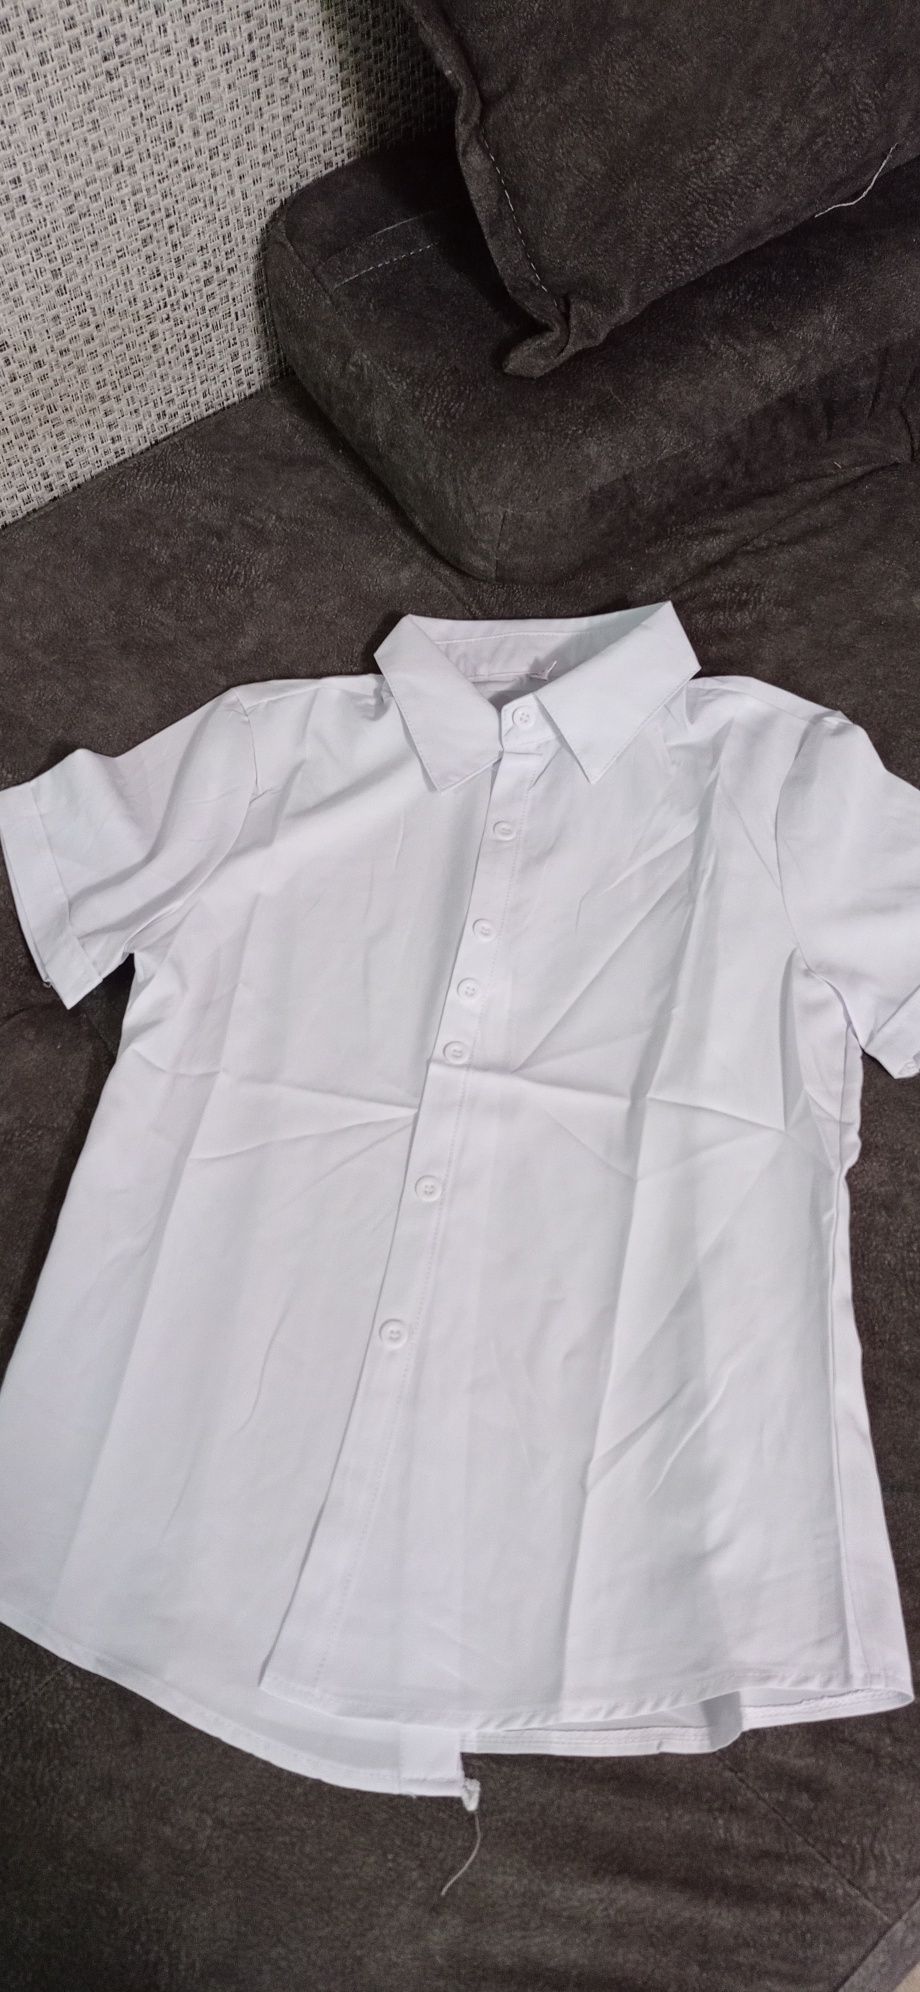 Продам блузку белую